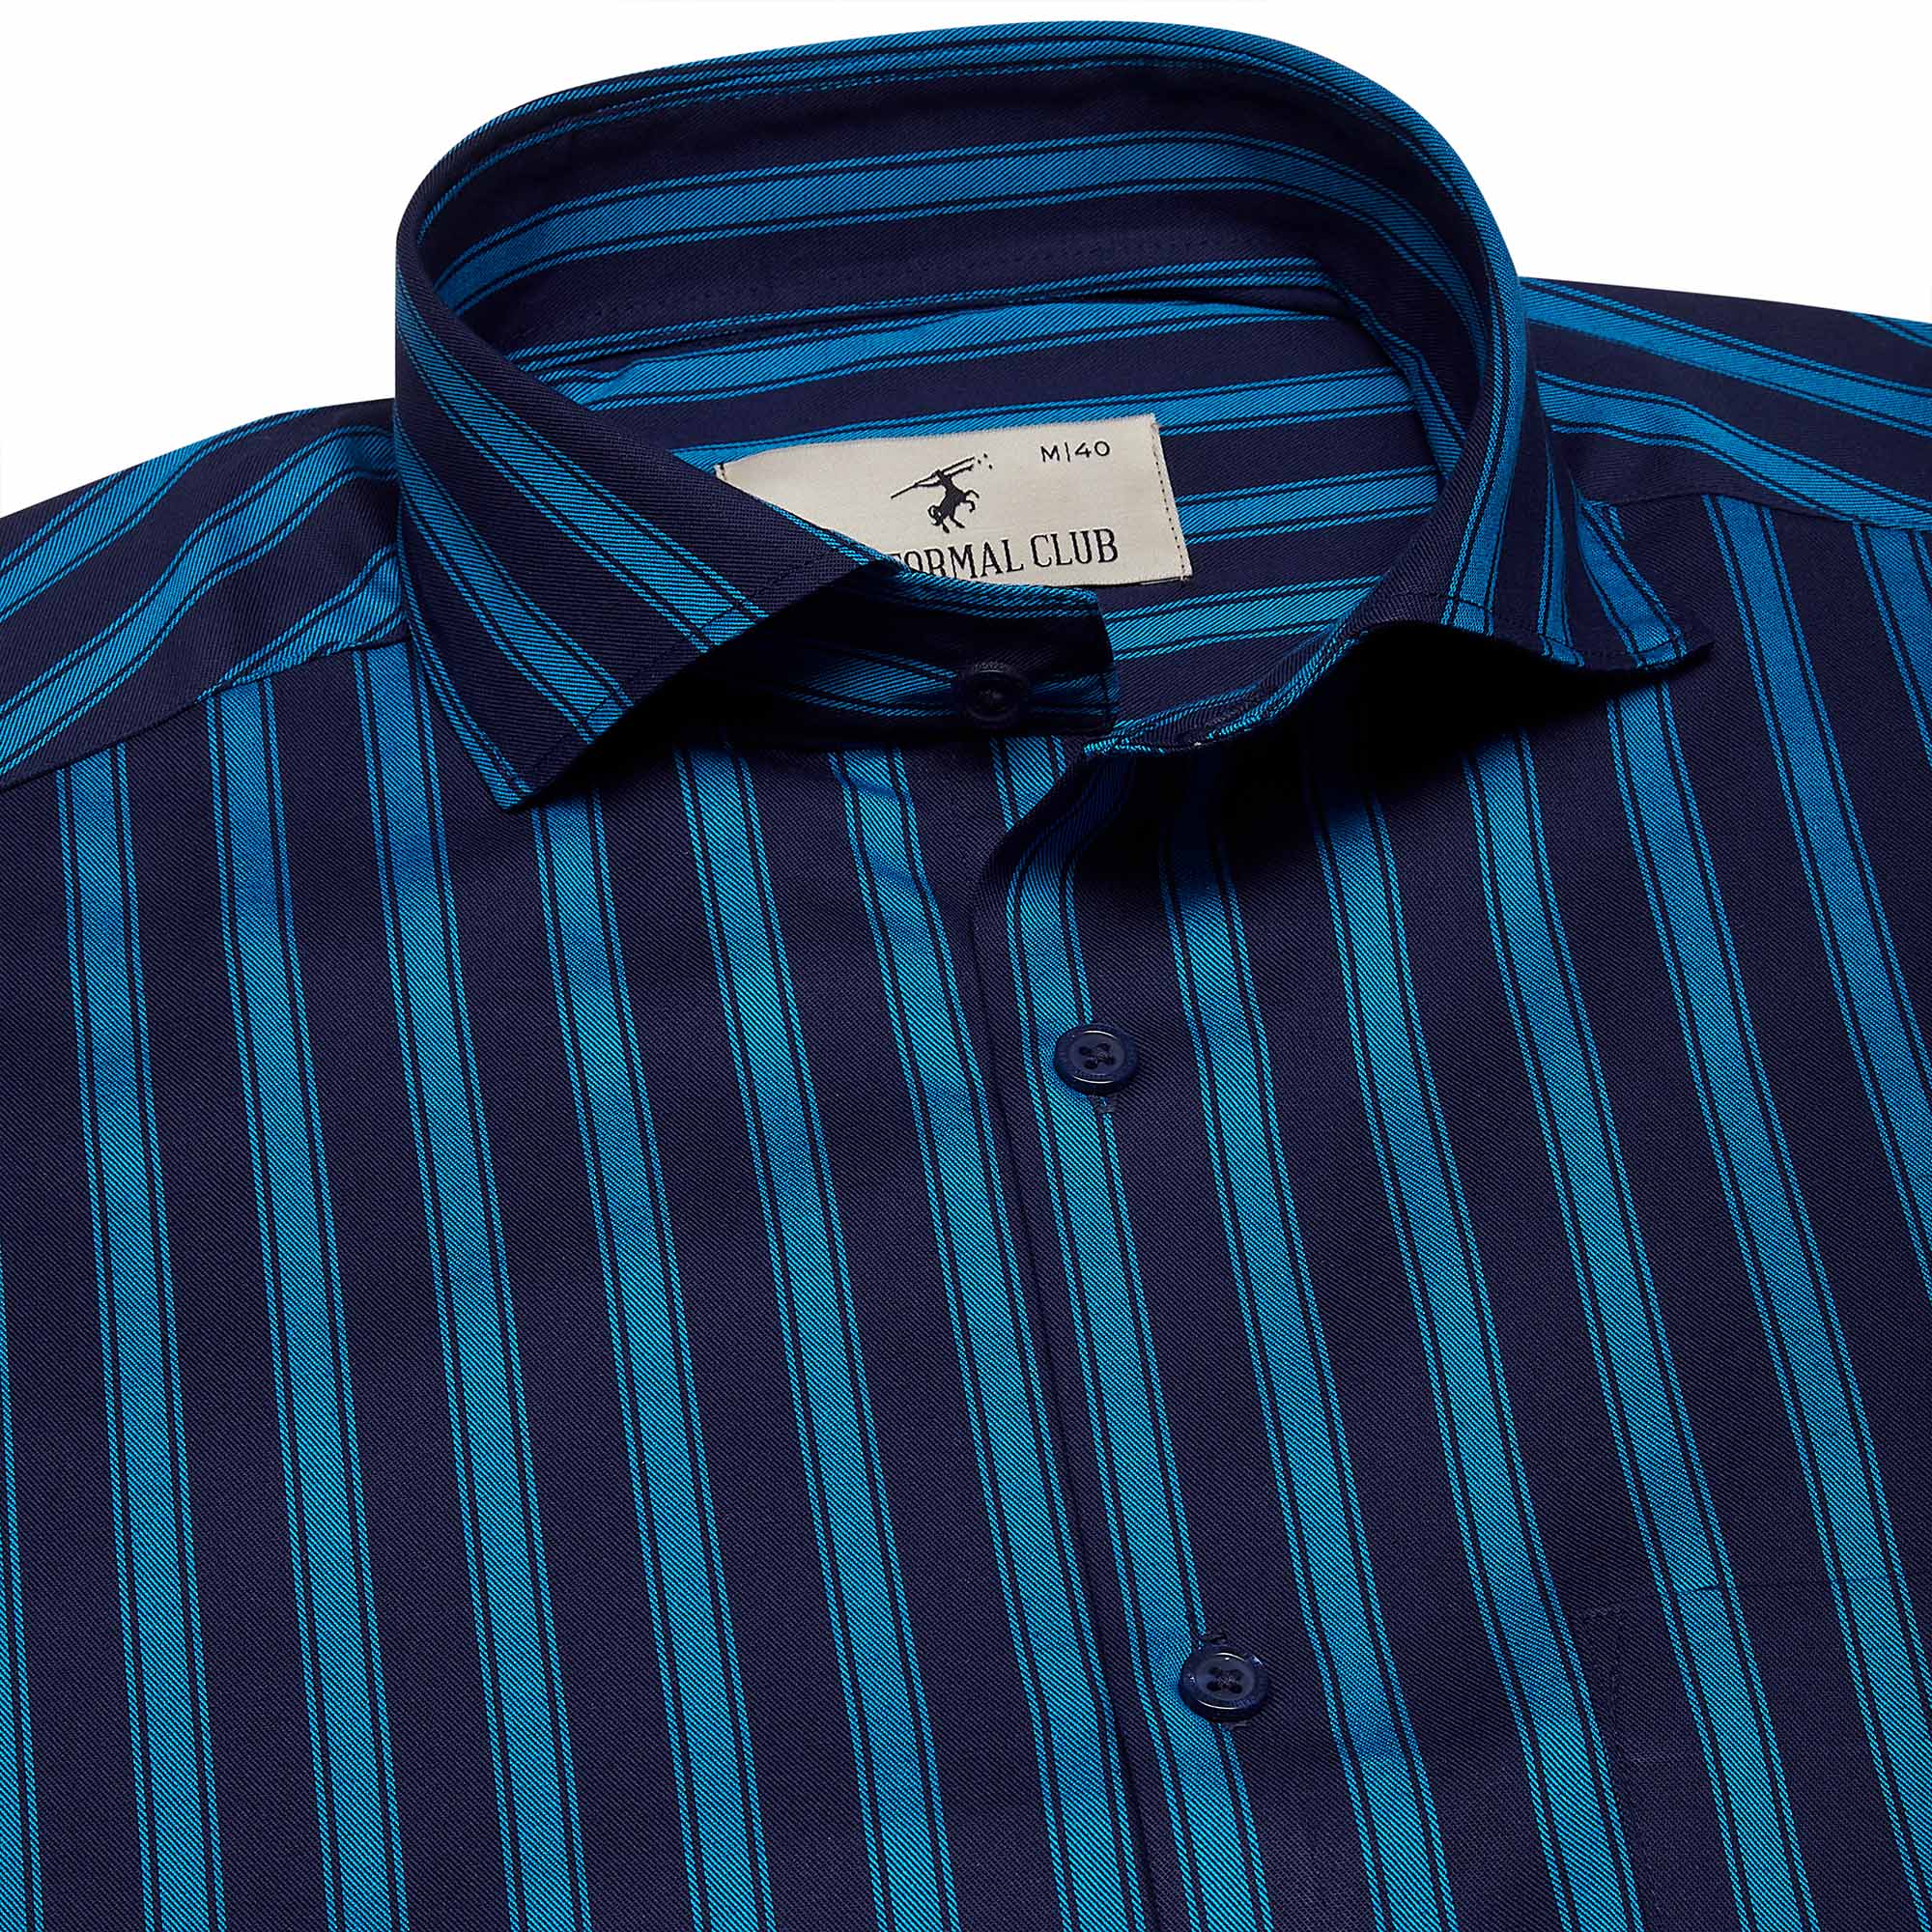 Rhythm Blue Stripe Shirt In Navy Blue - The Formal Club